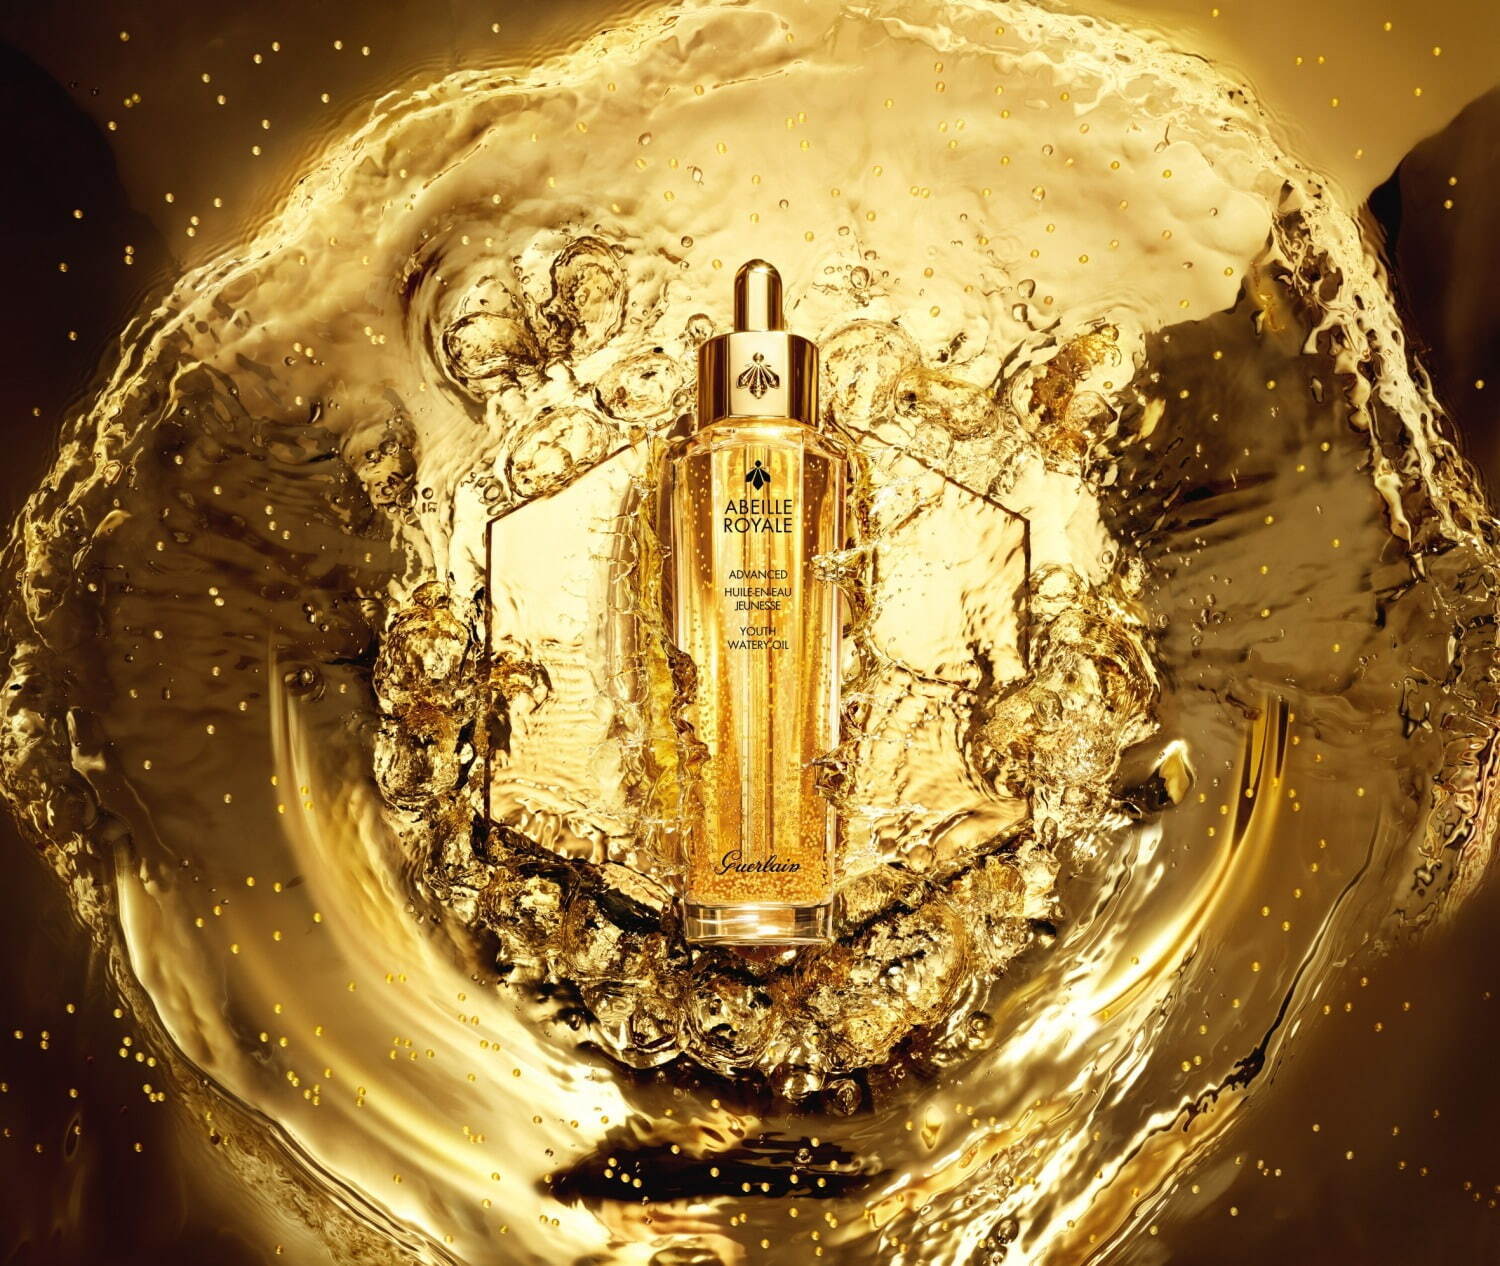 ゲラン“蜂蜜入り”「アベイユ ロイヤル」のベストセラー美容液が進化